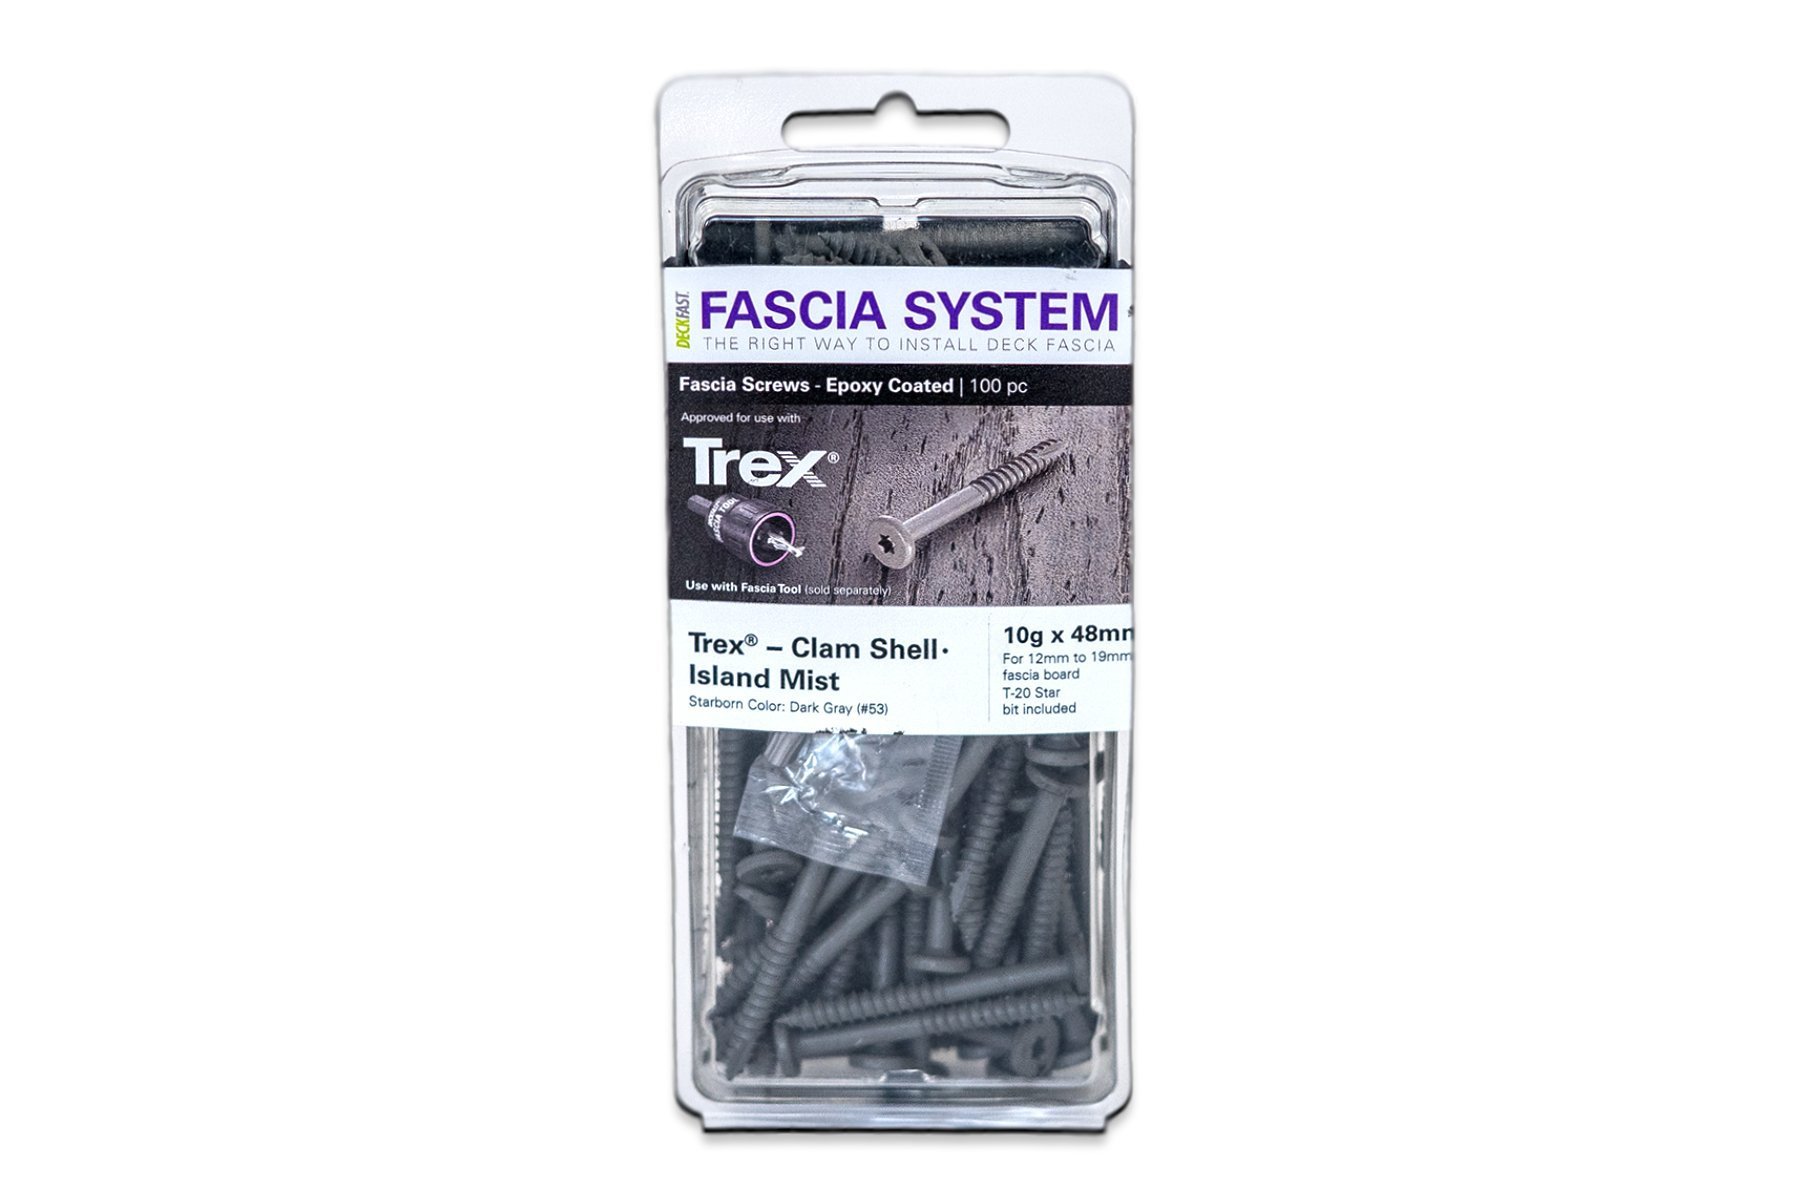 Trex Deckfast Fascia Board Screws